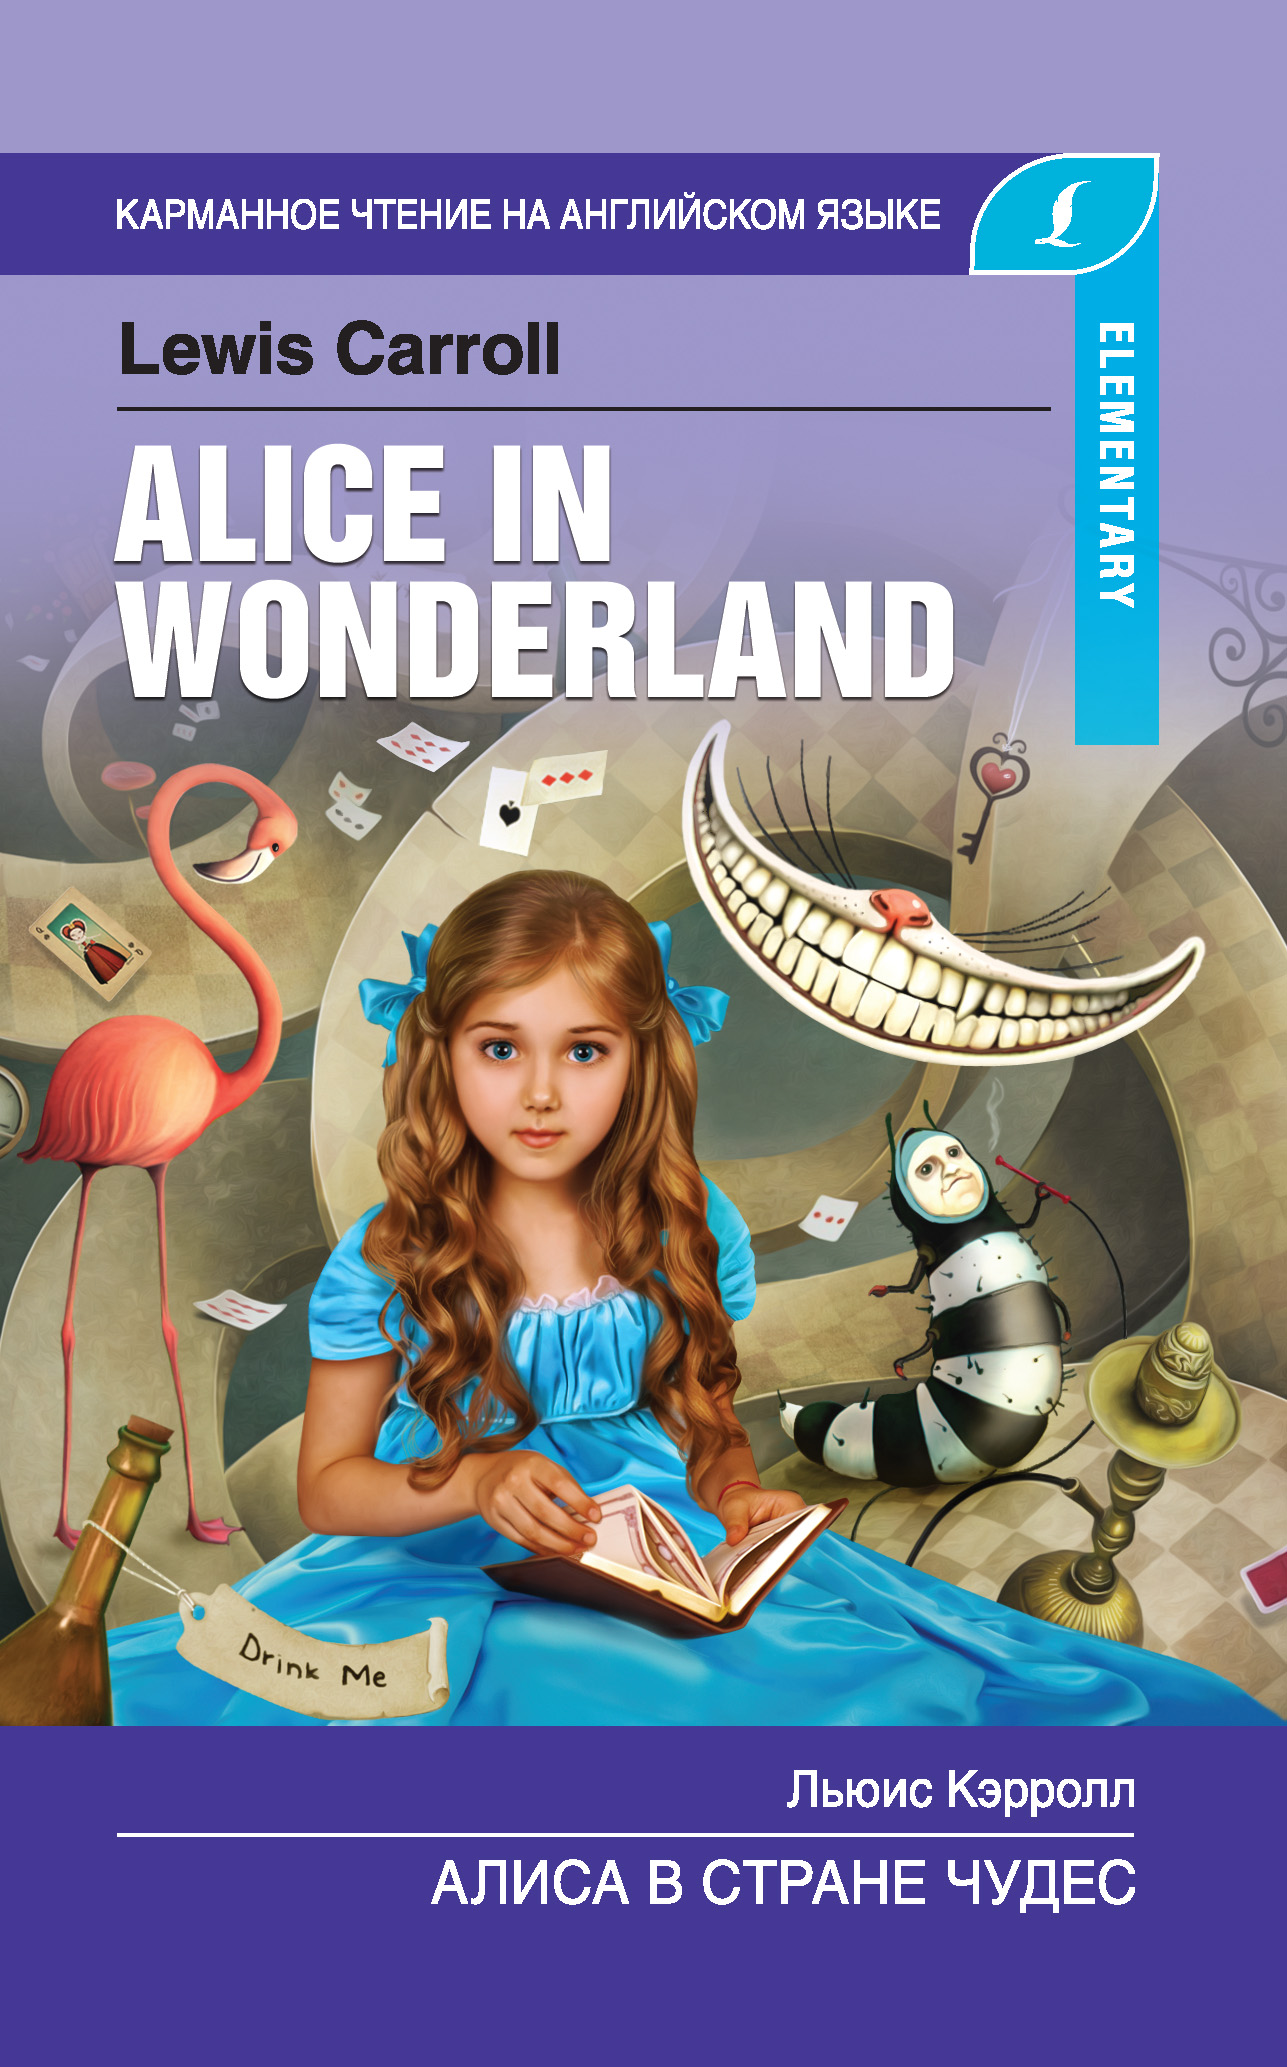 Книга Алиса в стране чудес / Alice in Wonderland из серии Карманное чтение на английском языке, созданная Льюис Кэрролл, может относится к жанру Иностранные языки, Зарубежная классика, Сказки. Стоимость электронной книги Алиса в стране чудес / Alice in Wonderland с идентификатором 42593090 составляет 89.90 руб.